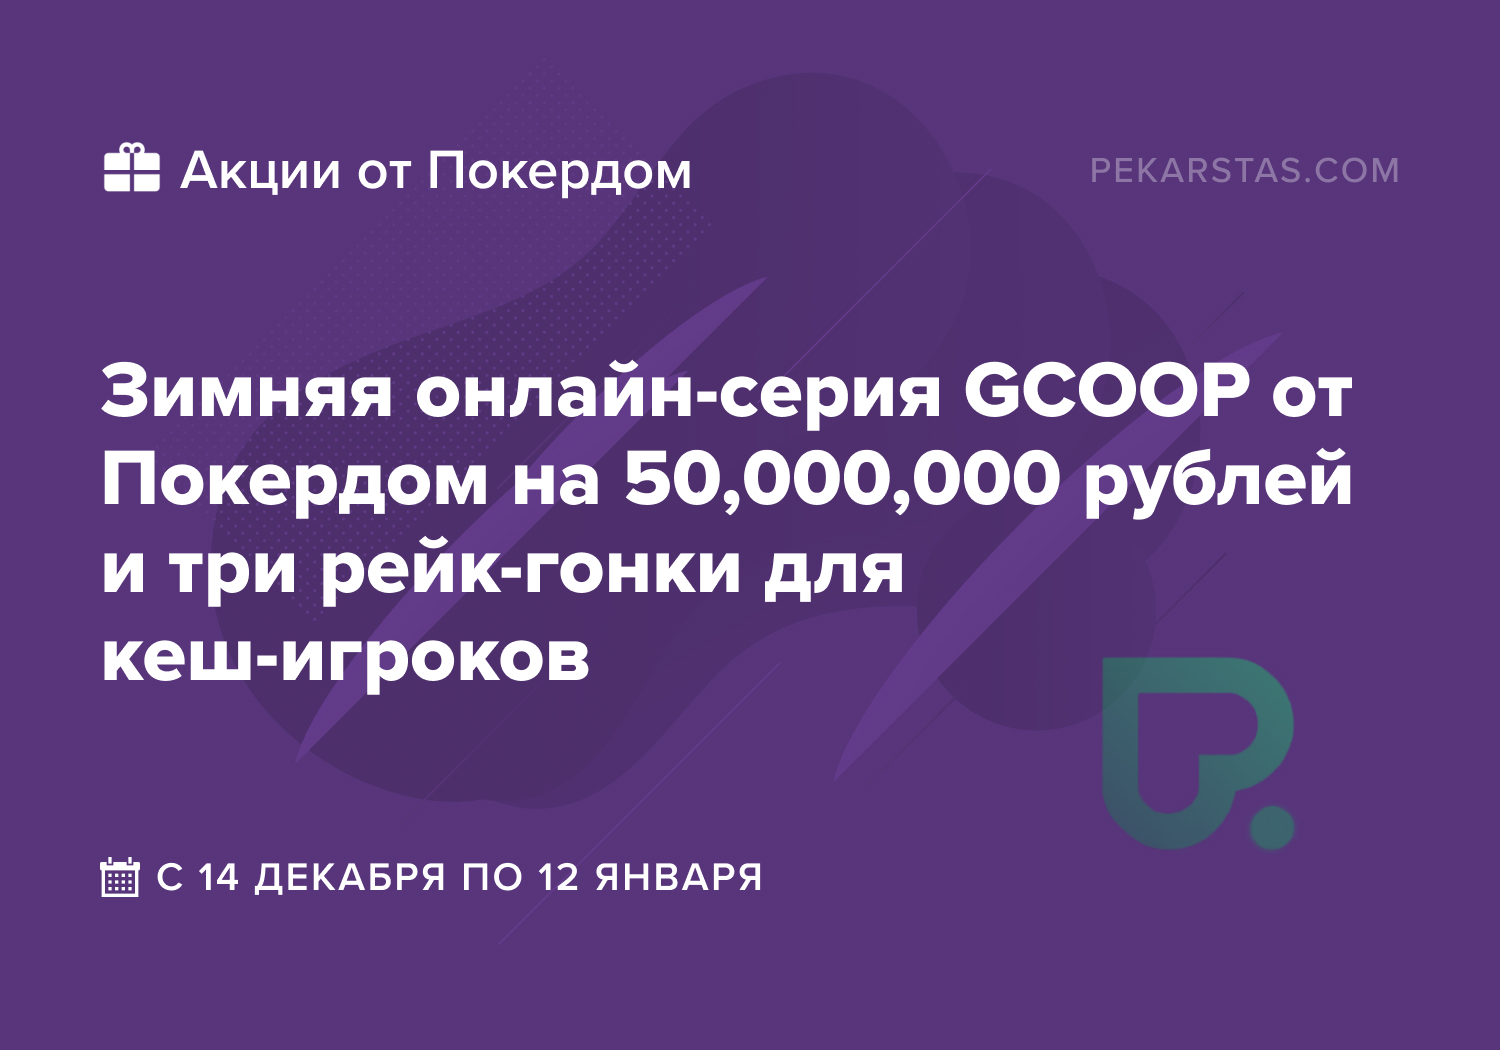 Покердом проведёт три рейк-гонки и серию GCOOP с гарантией 50,000,000 рублей